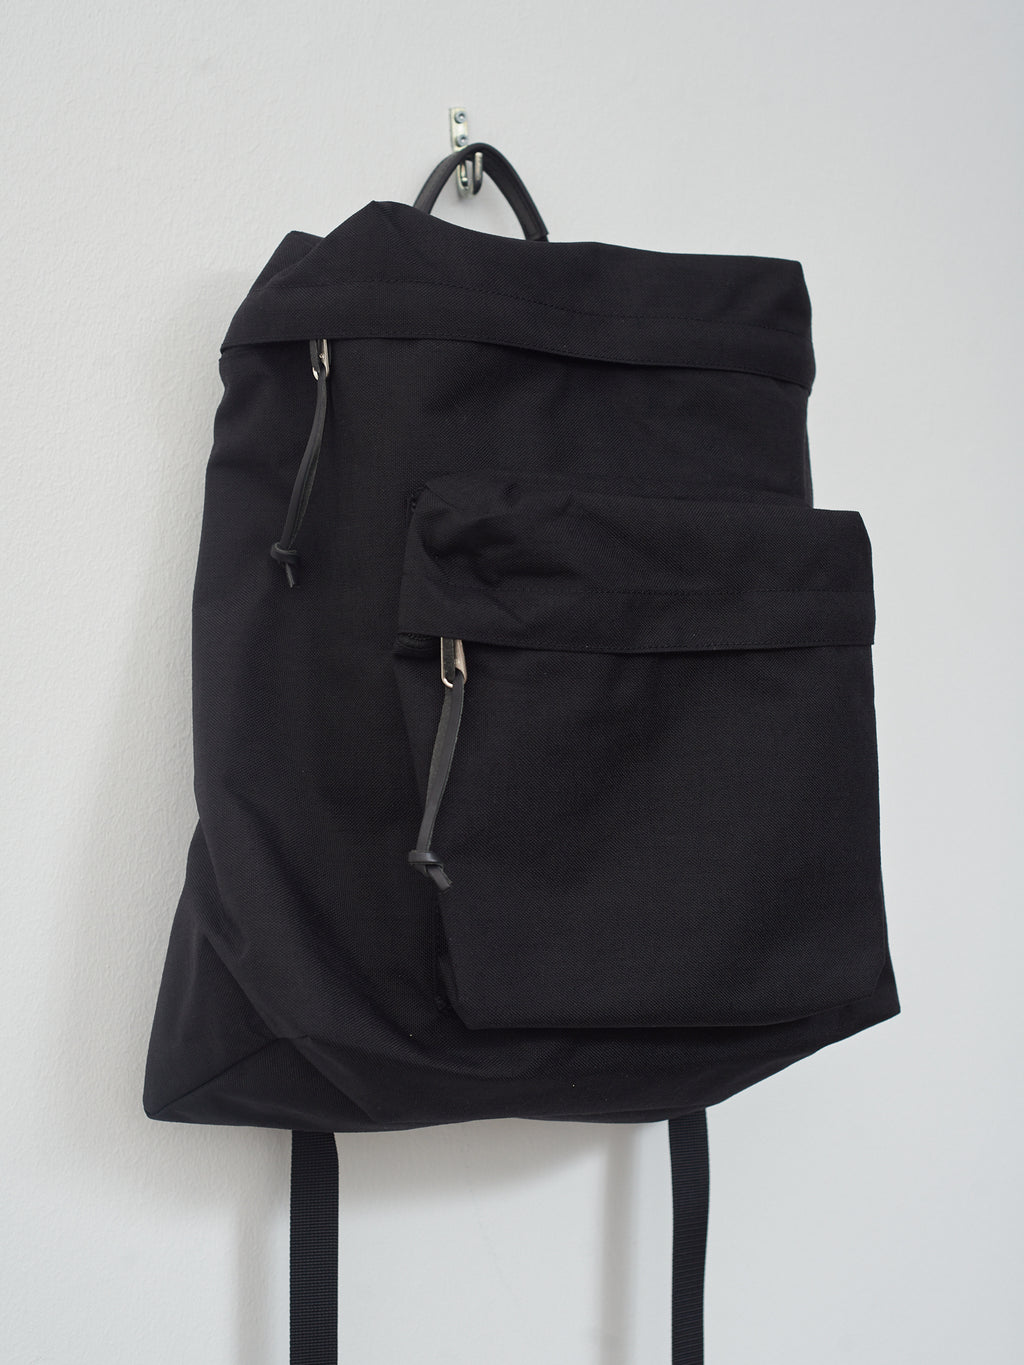 Backpack TF M - Black